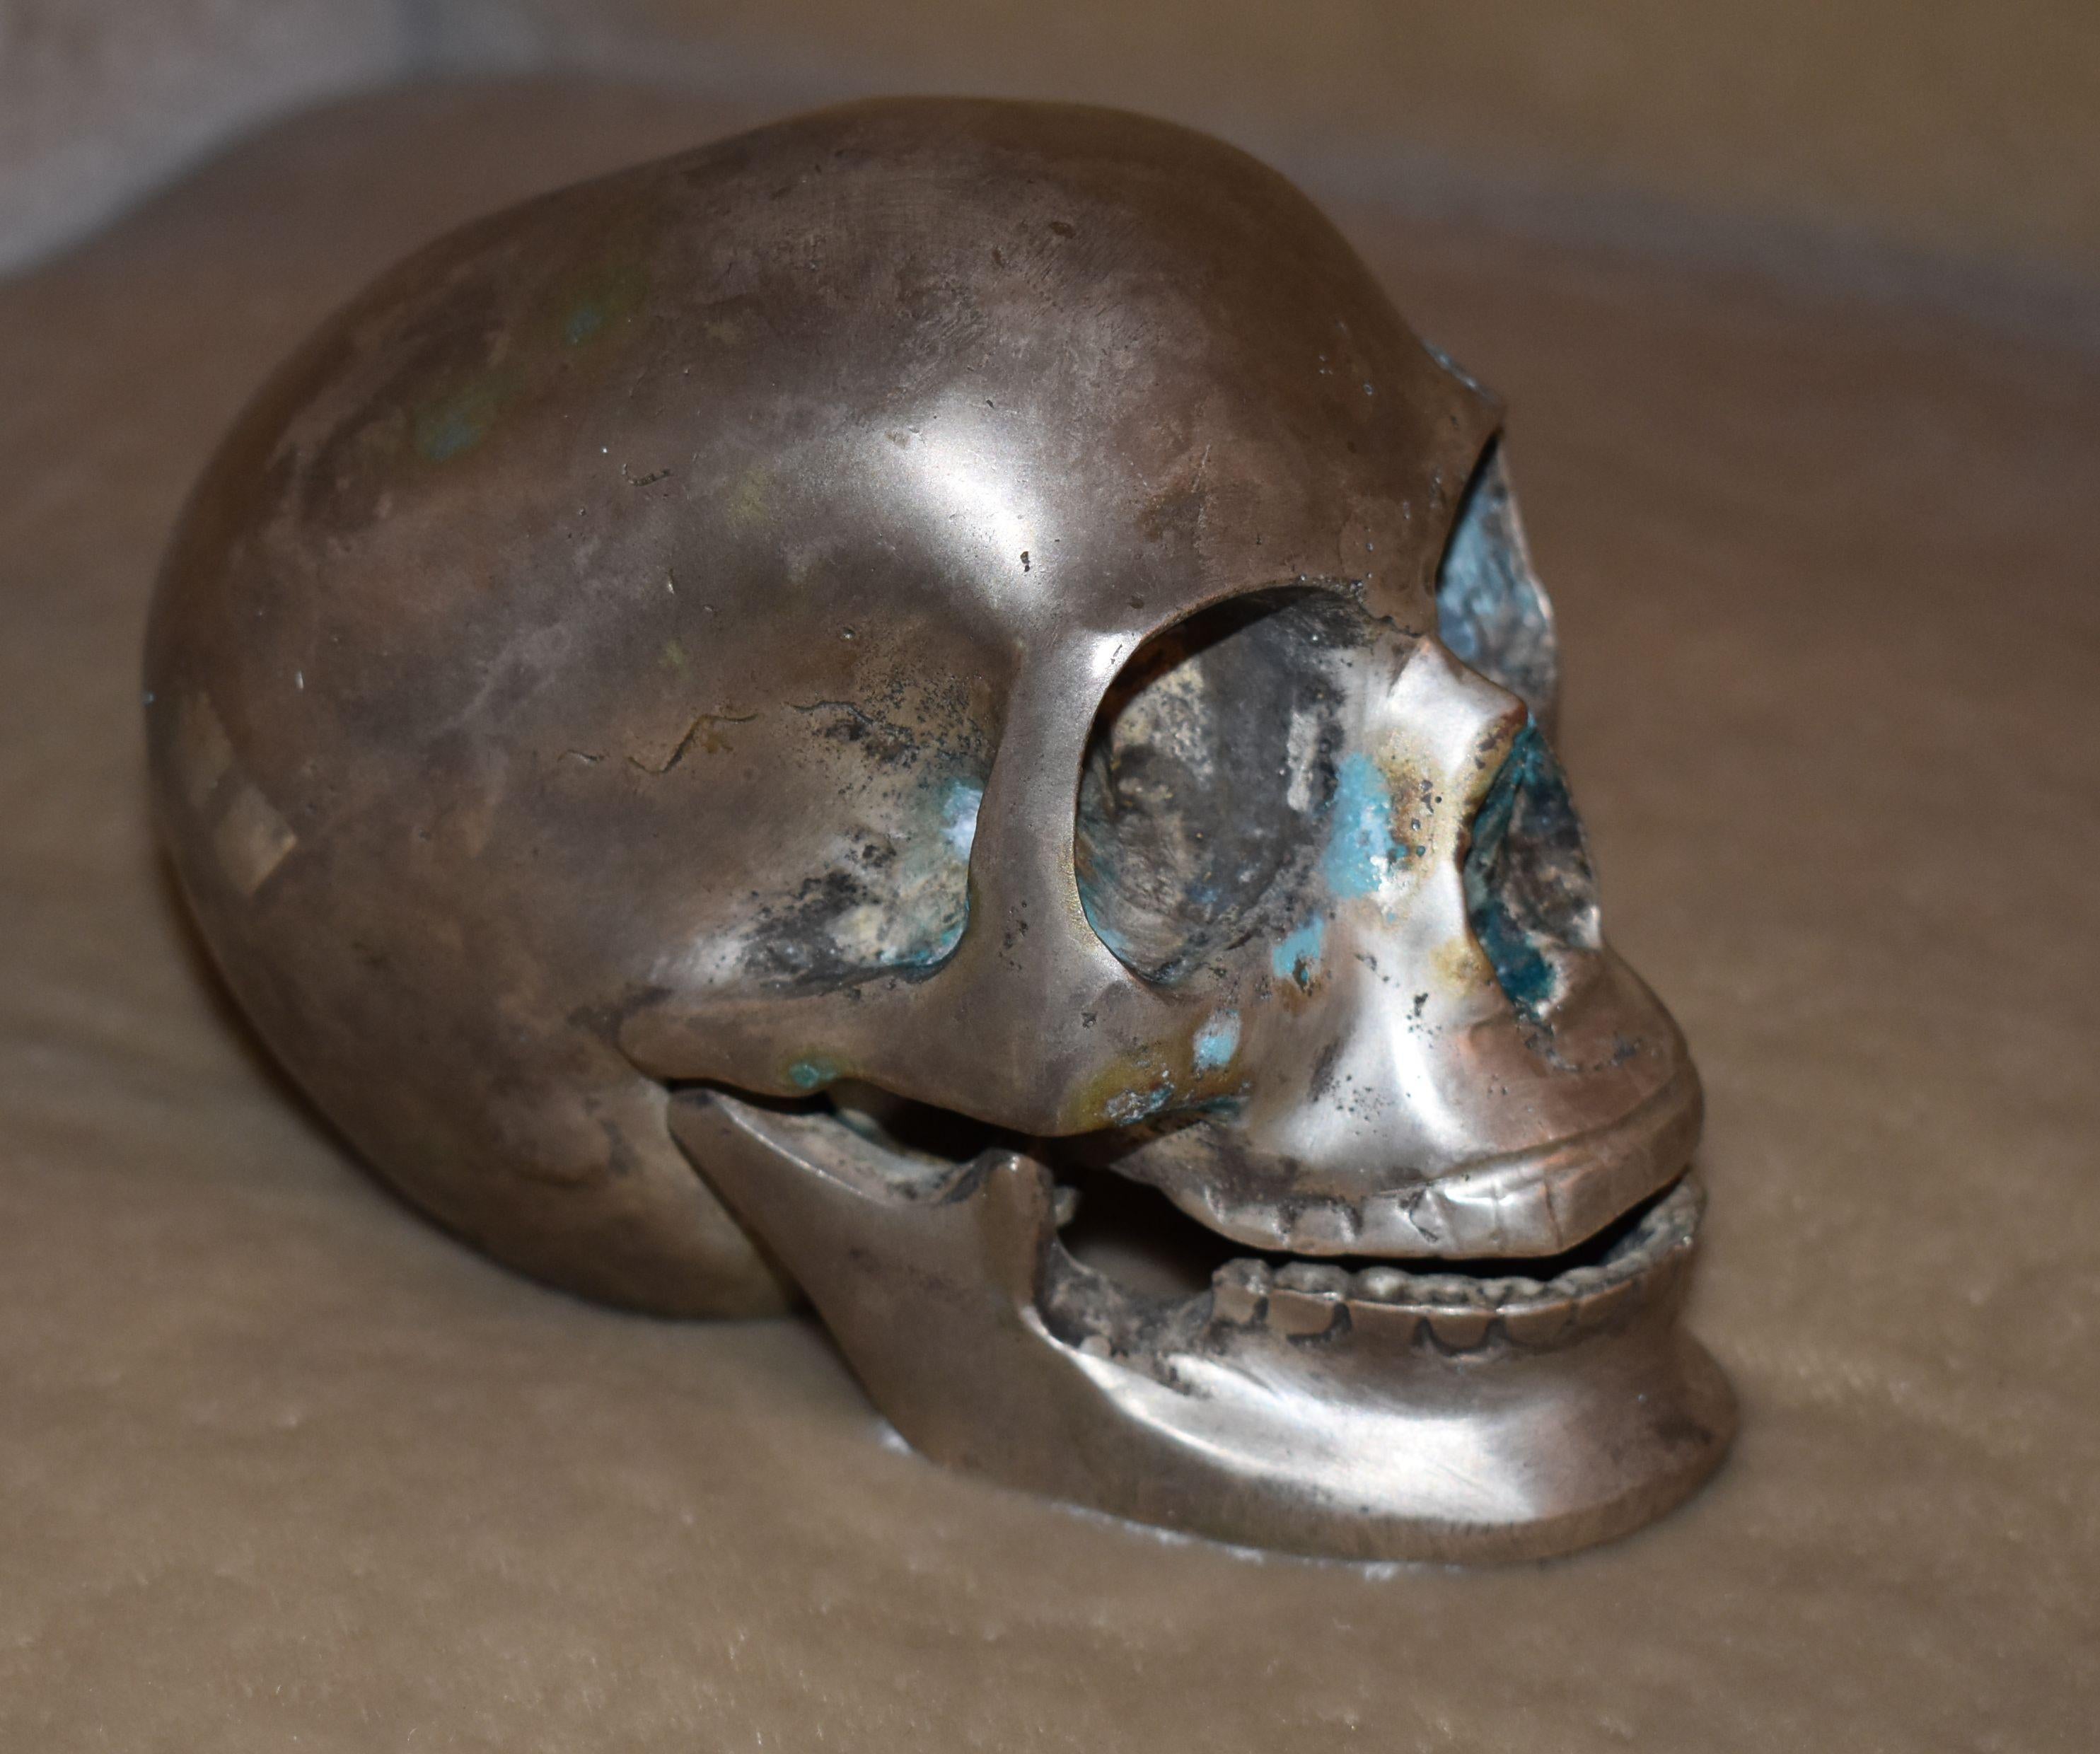 Nickel-plated over bronze skull sculpture.